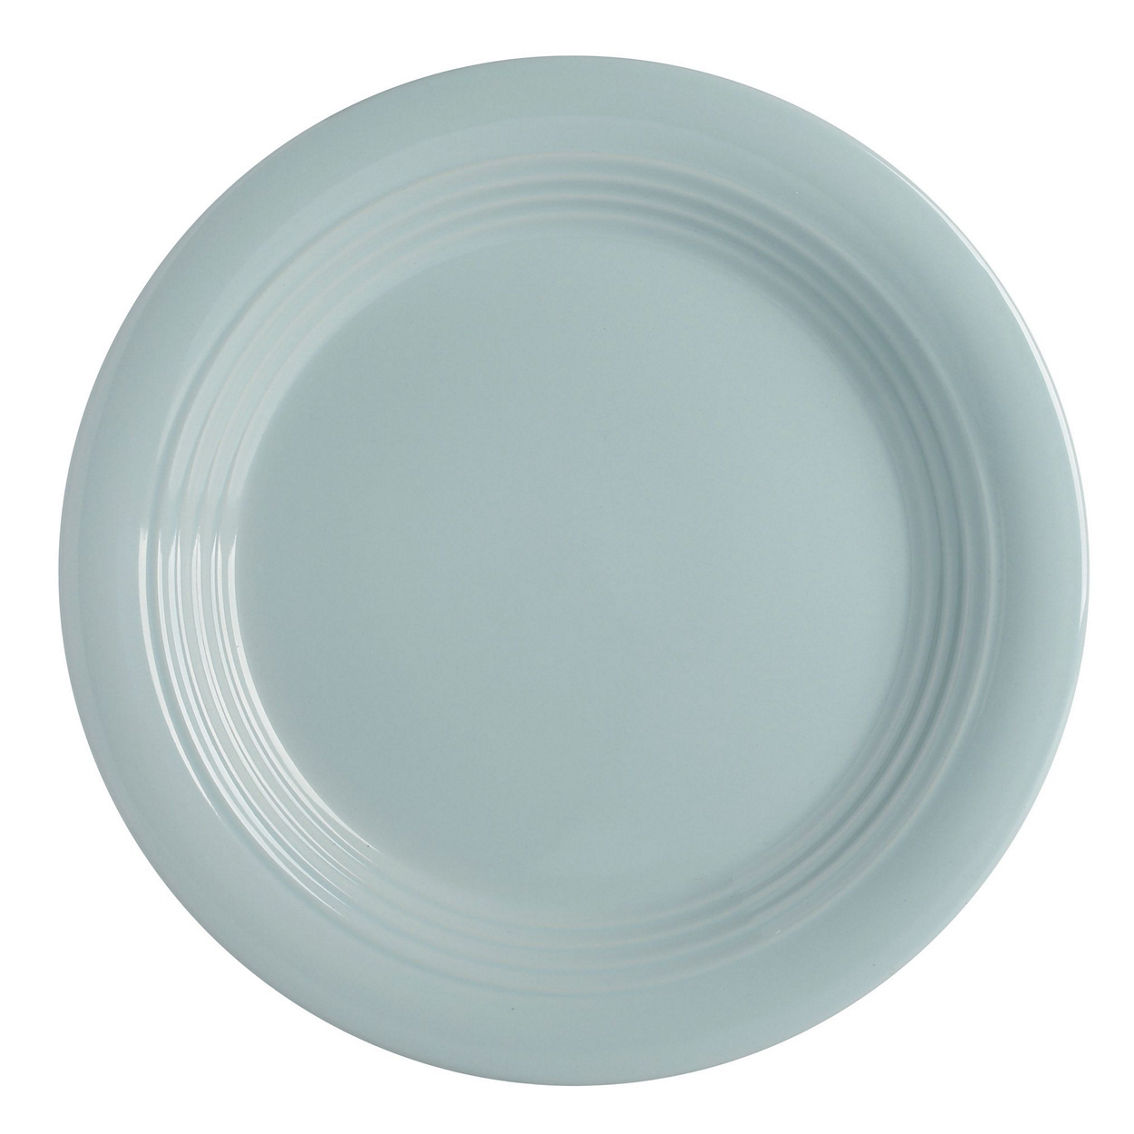 Martha Stewart Everyday 16 Piece Round Stoneware Dinnerware Set in Blue - Image 4 of 5